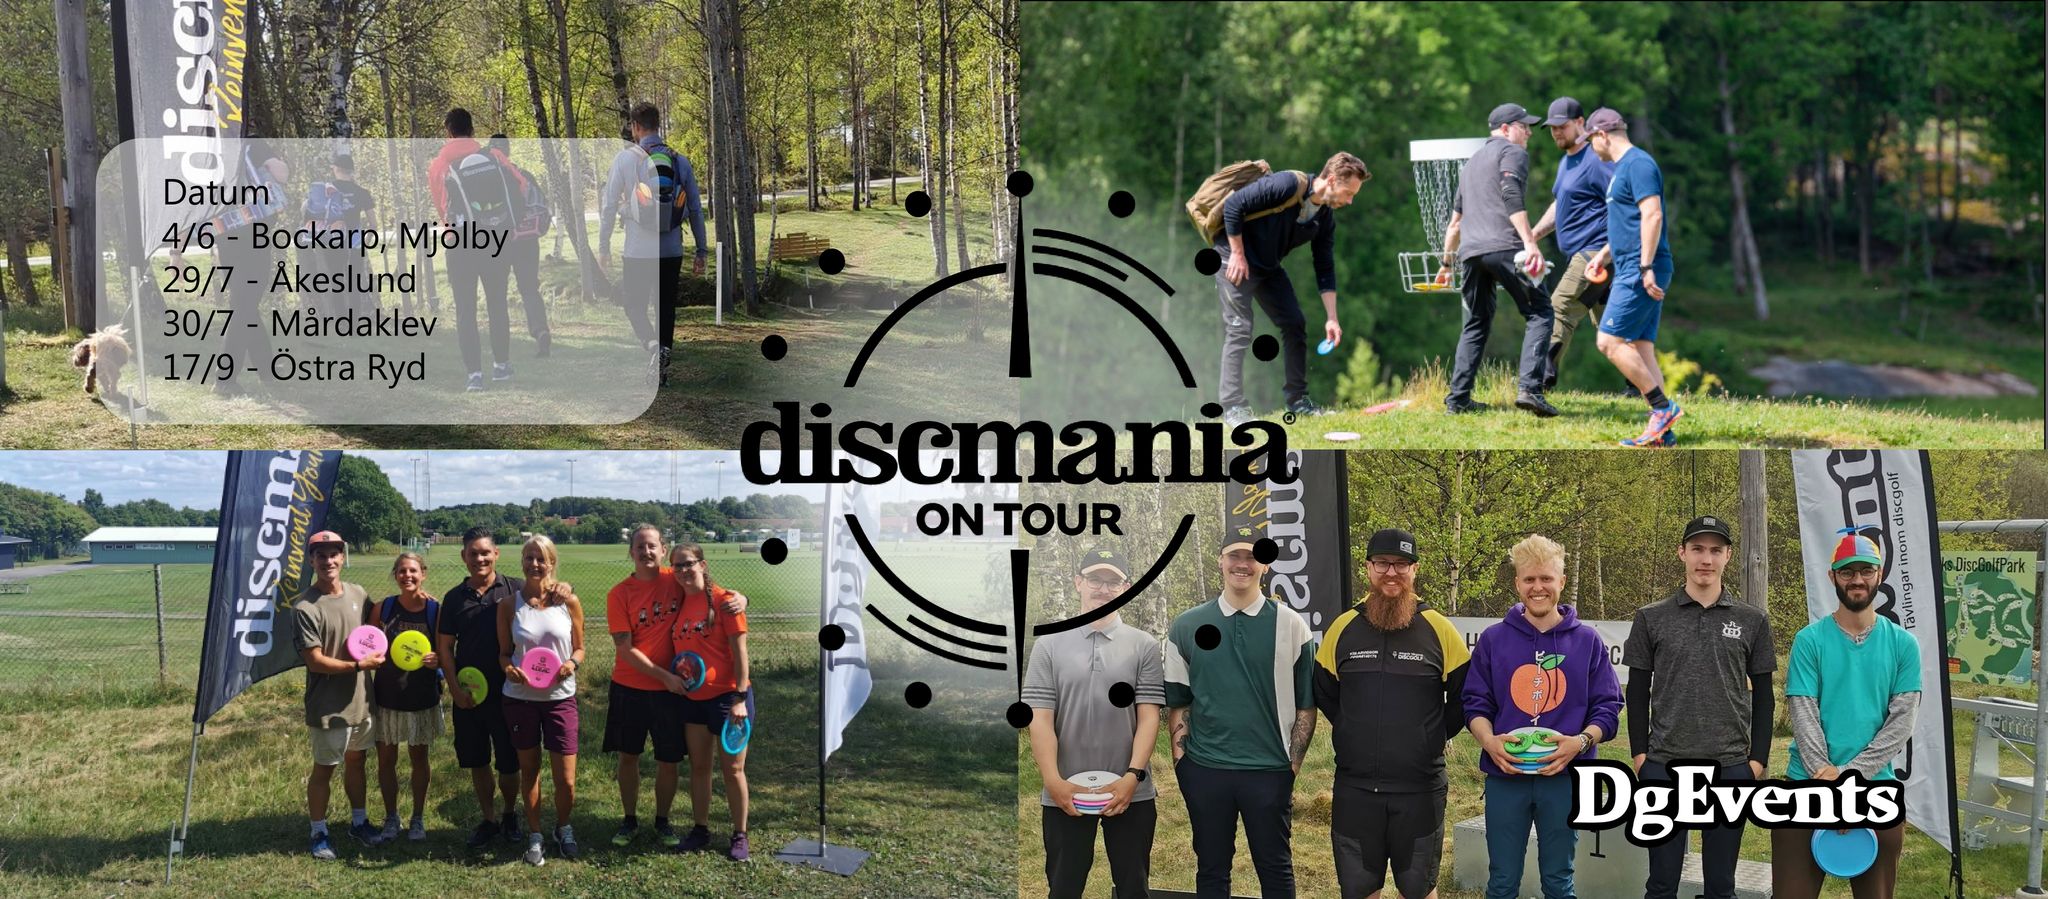 Discmania on tour